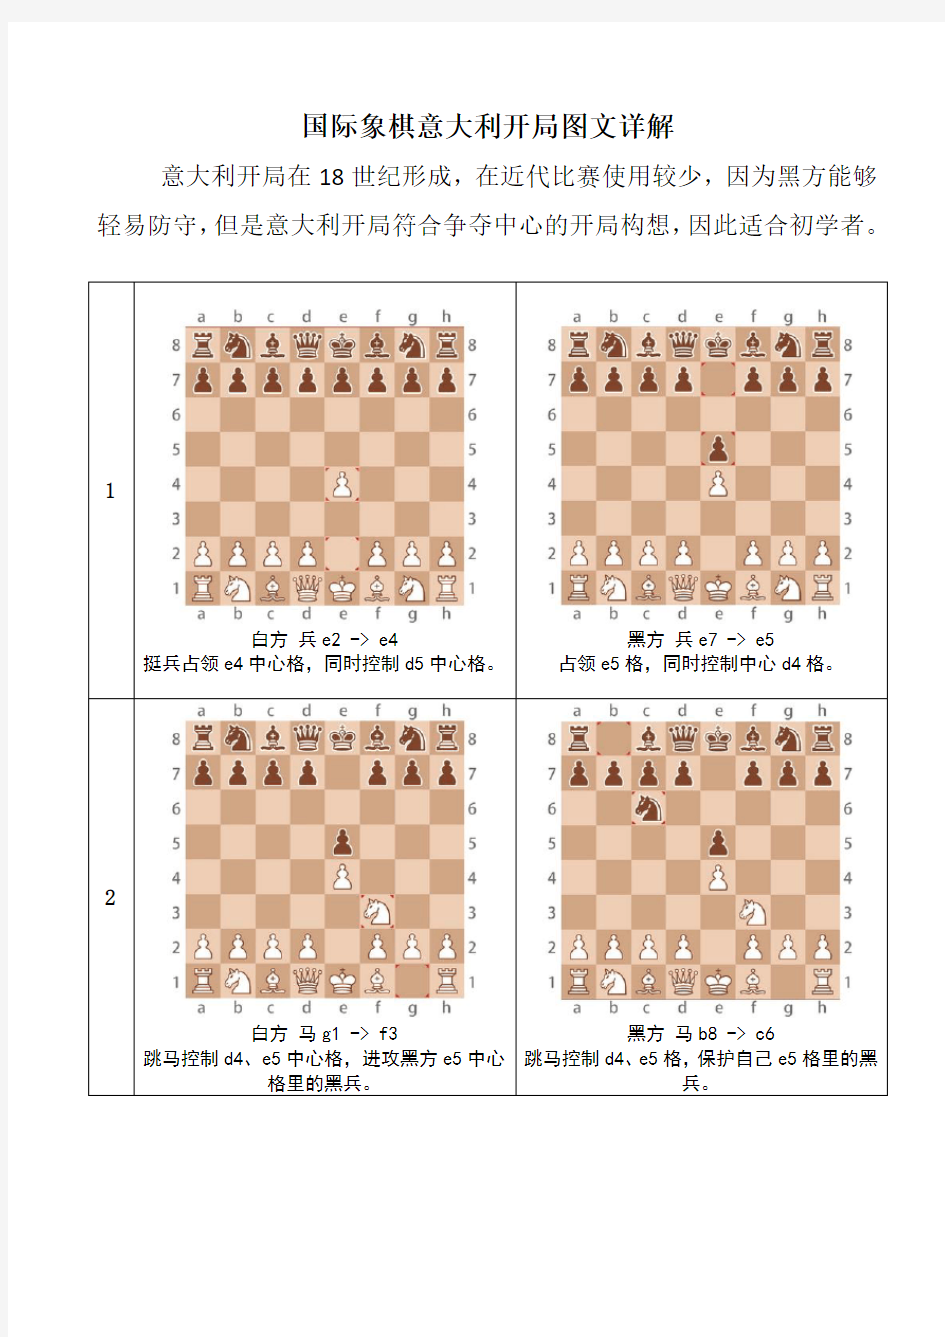 国际象棋意大利开局图文详解